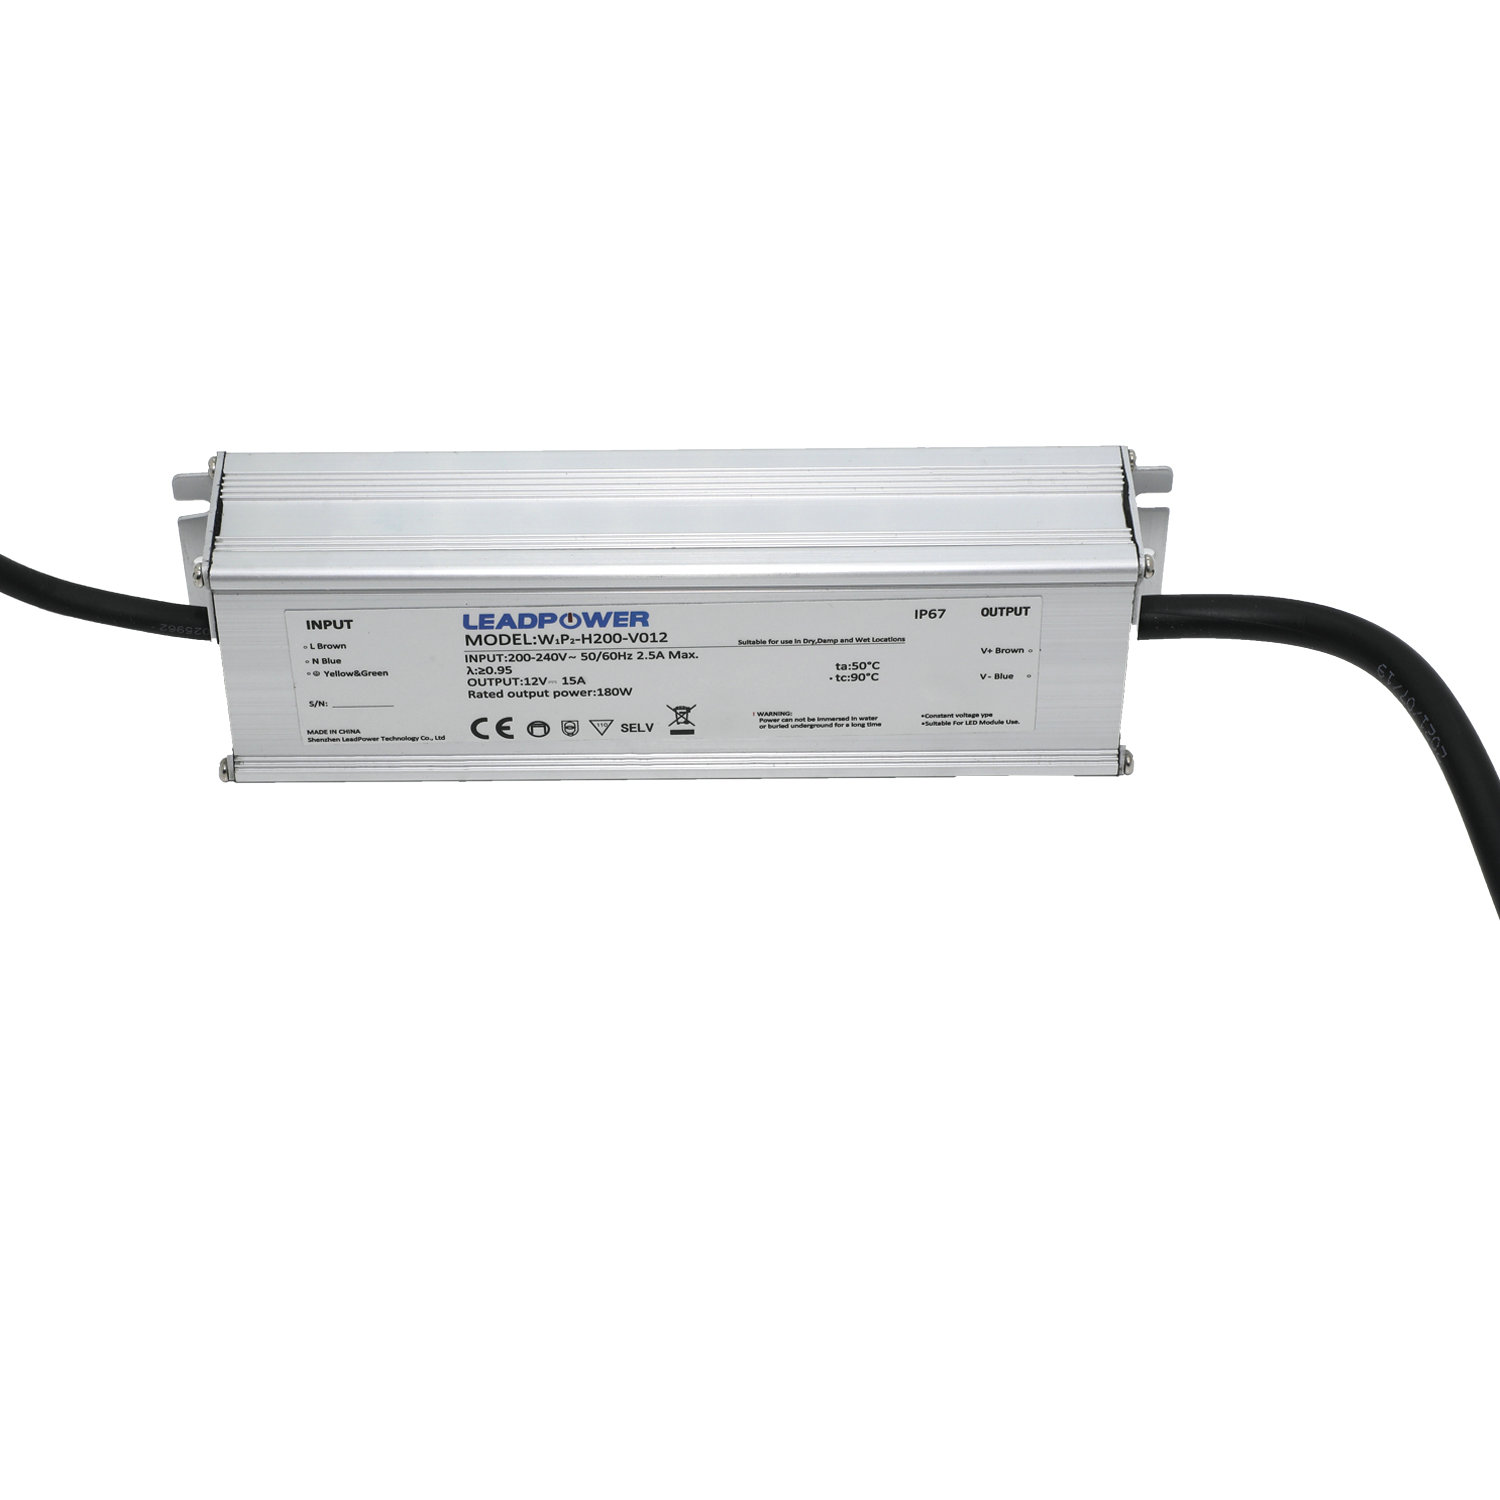 WBP-H200 Waterproof LED Power Supply